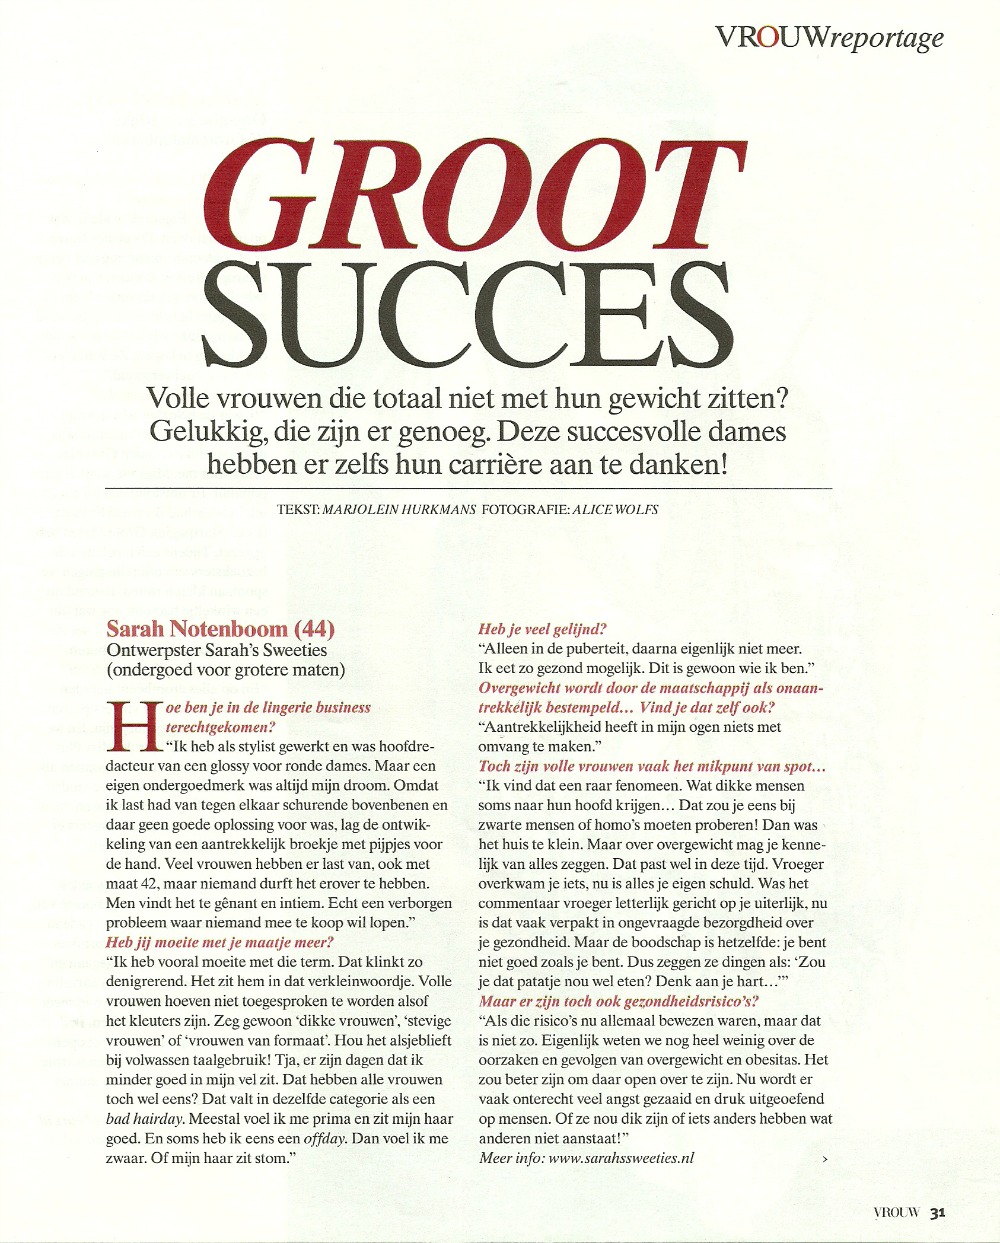 Interview met Sarah Notenboom over ondernemen en ontwerpen voor dikke dames in het blad Vrouw oktober 2010.